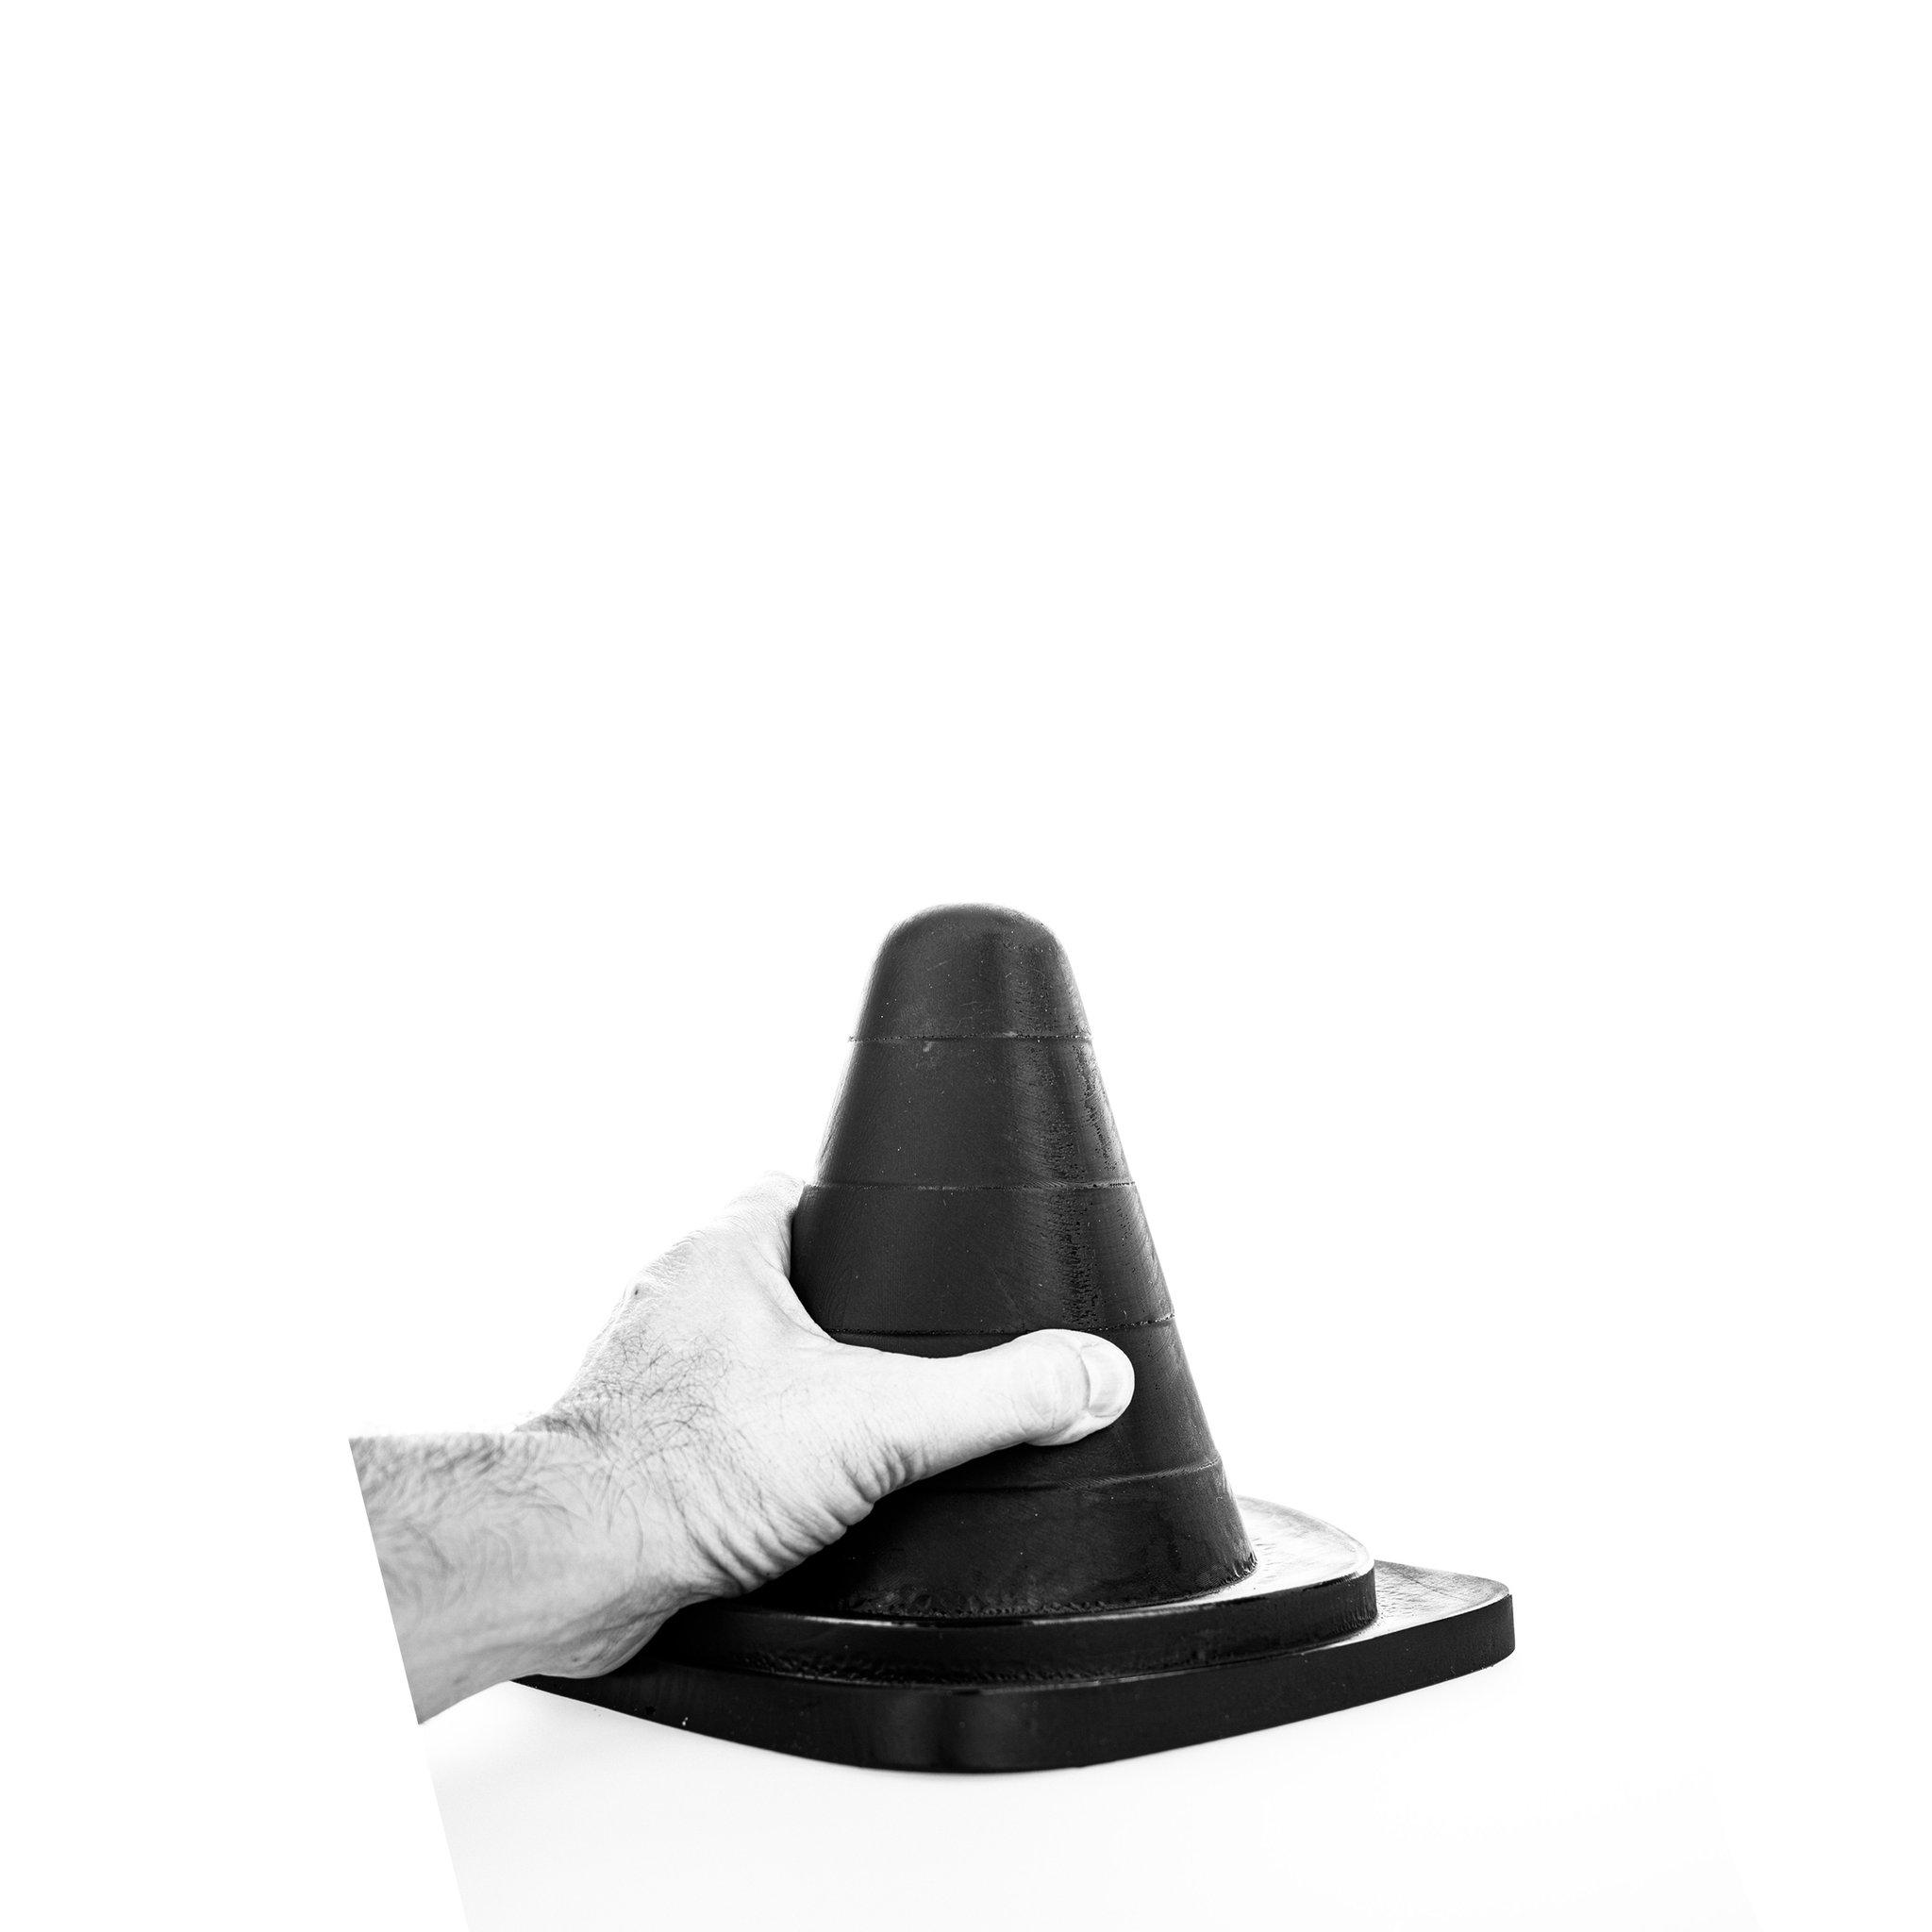 All Black Butt Plug Small Cone, 20 cm